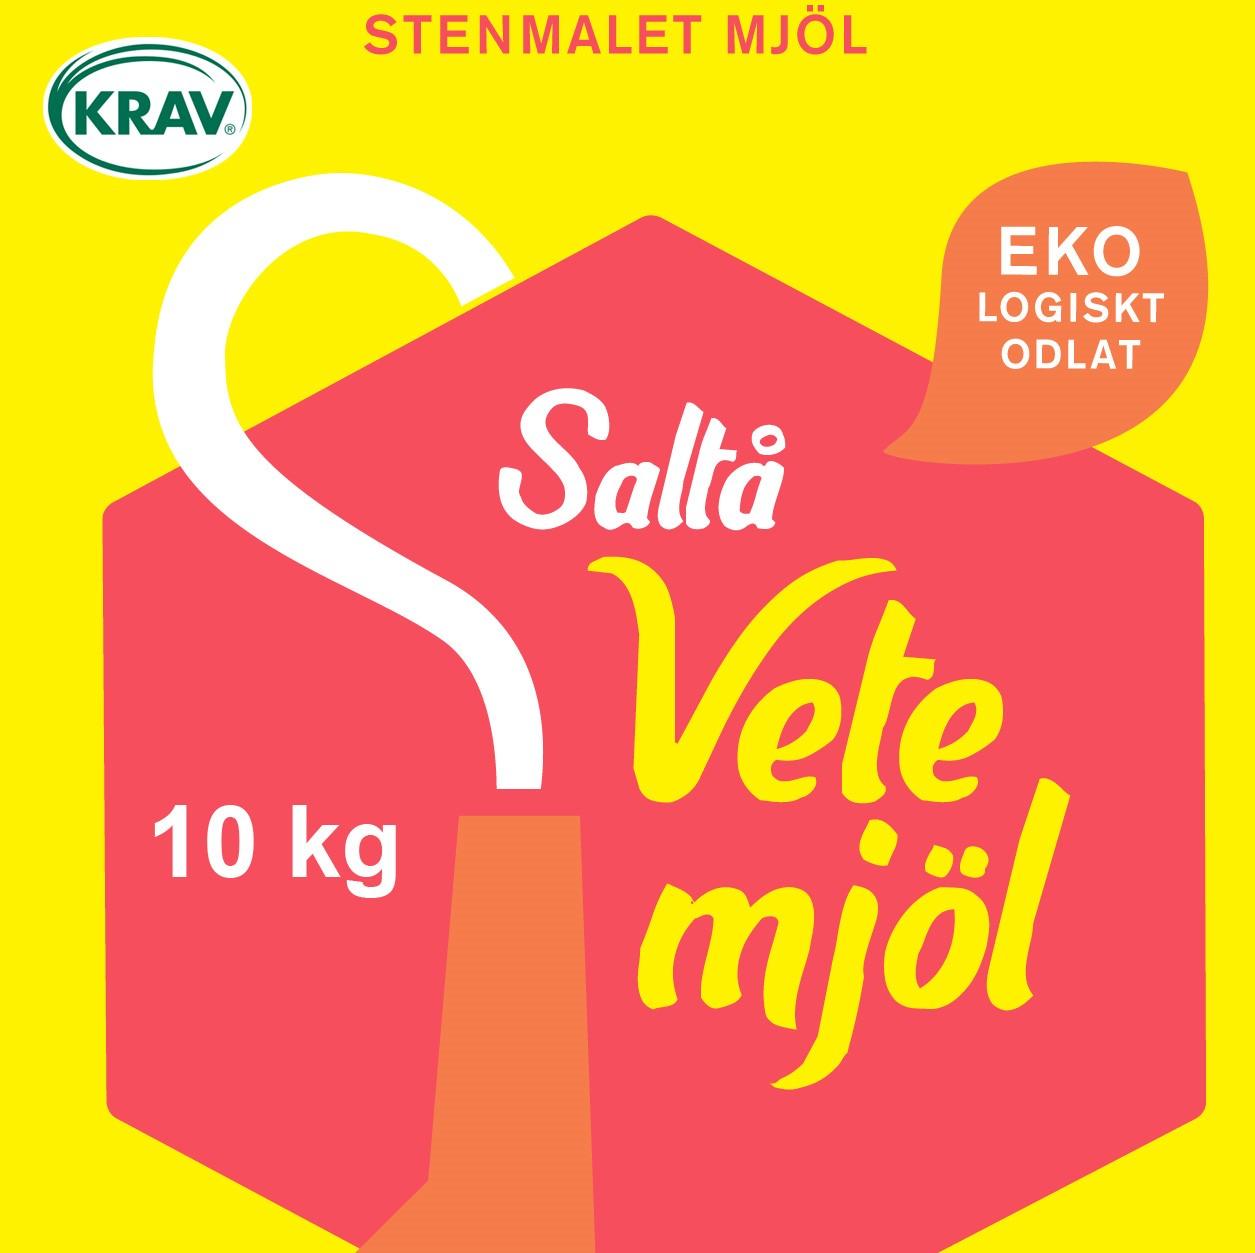 Saltå Kvarn's Vetemjöl'